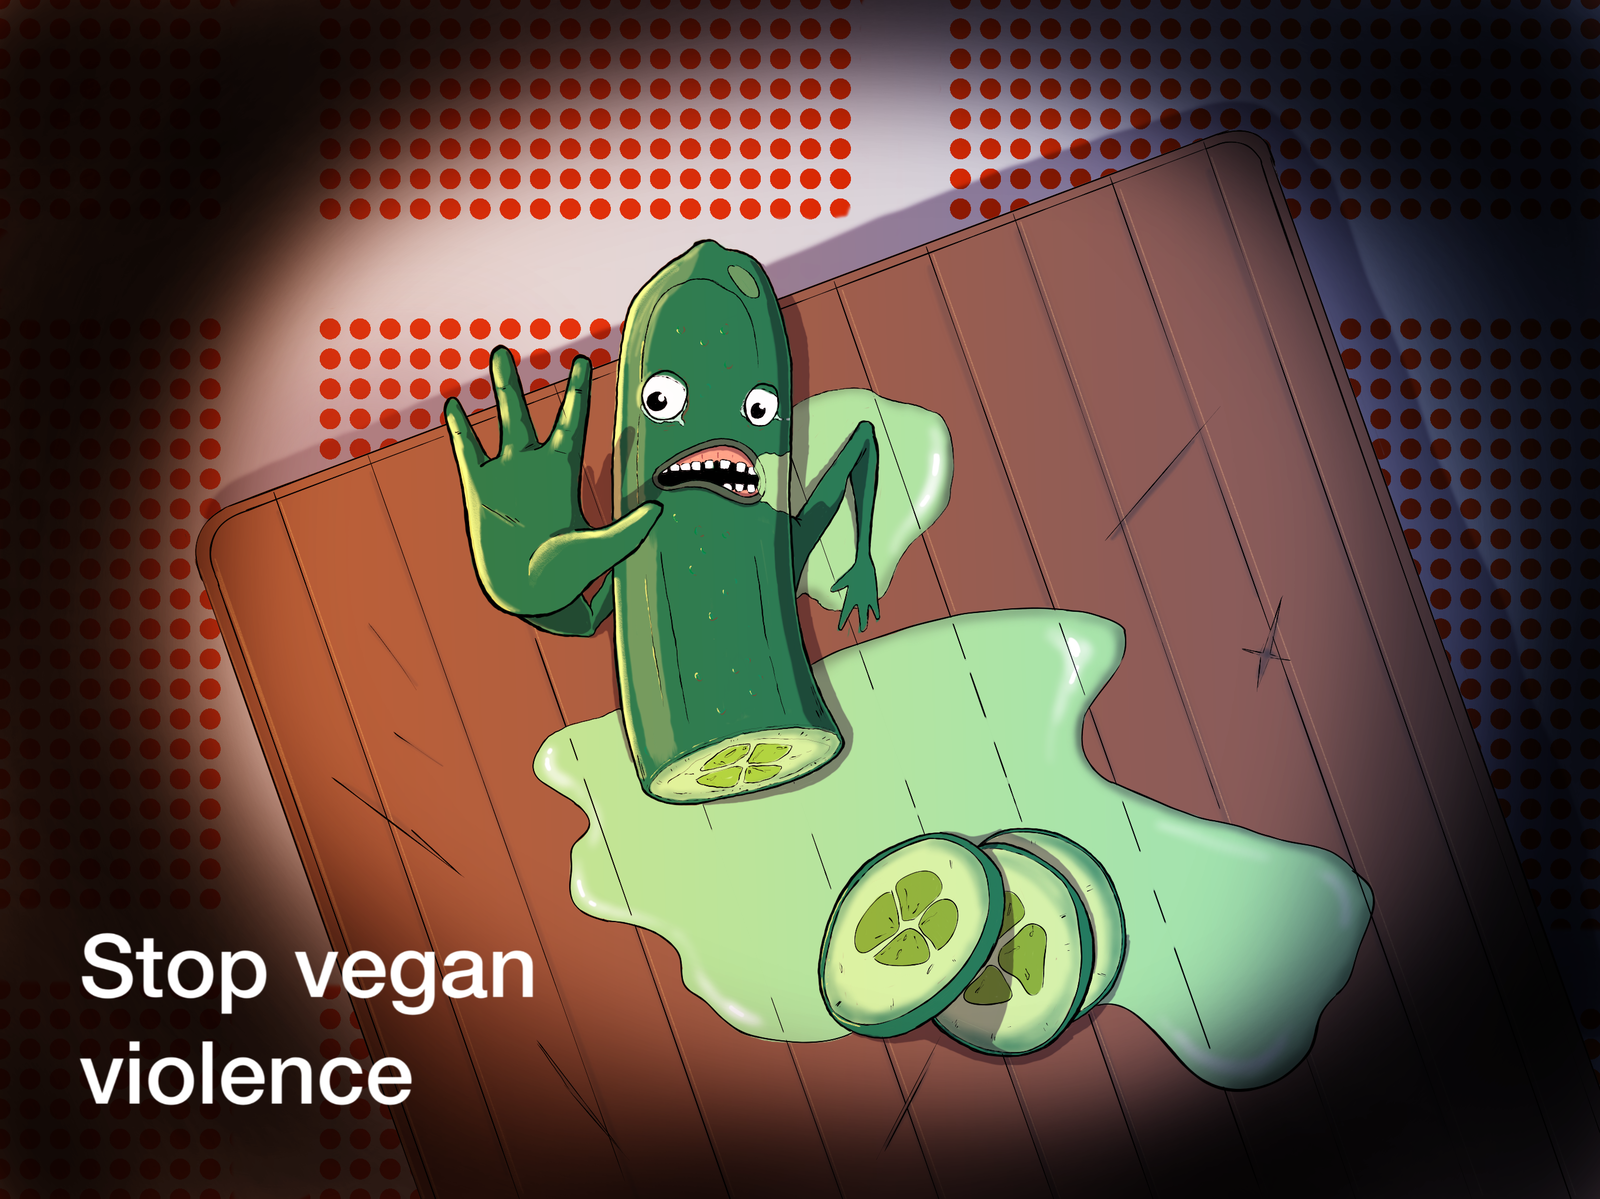 Vegan violence - My, Vegan, Violence, Vegetarianism, Drawing, Digital drawing, Cucumbers, Vegetables, Humor